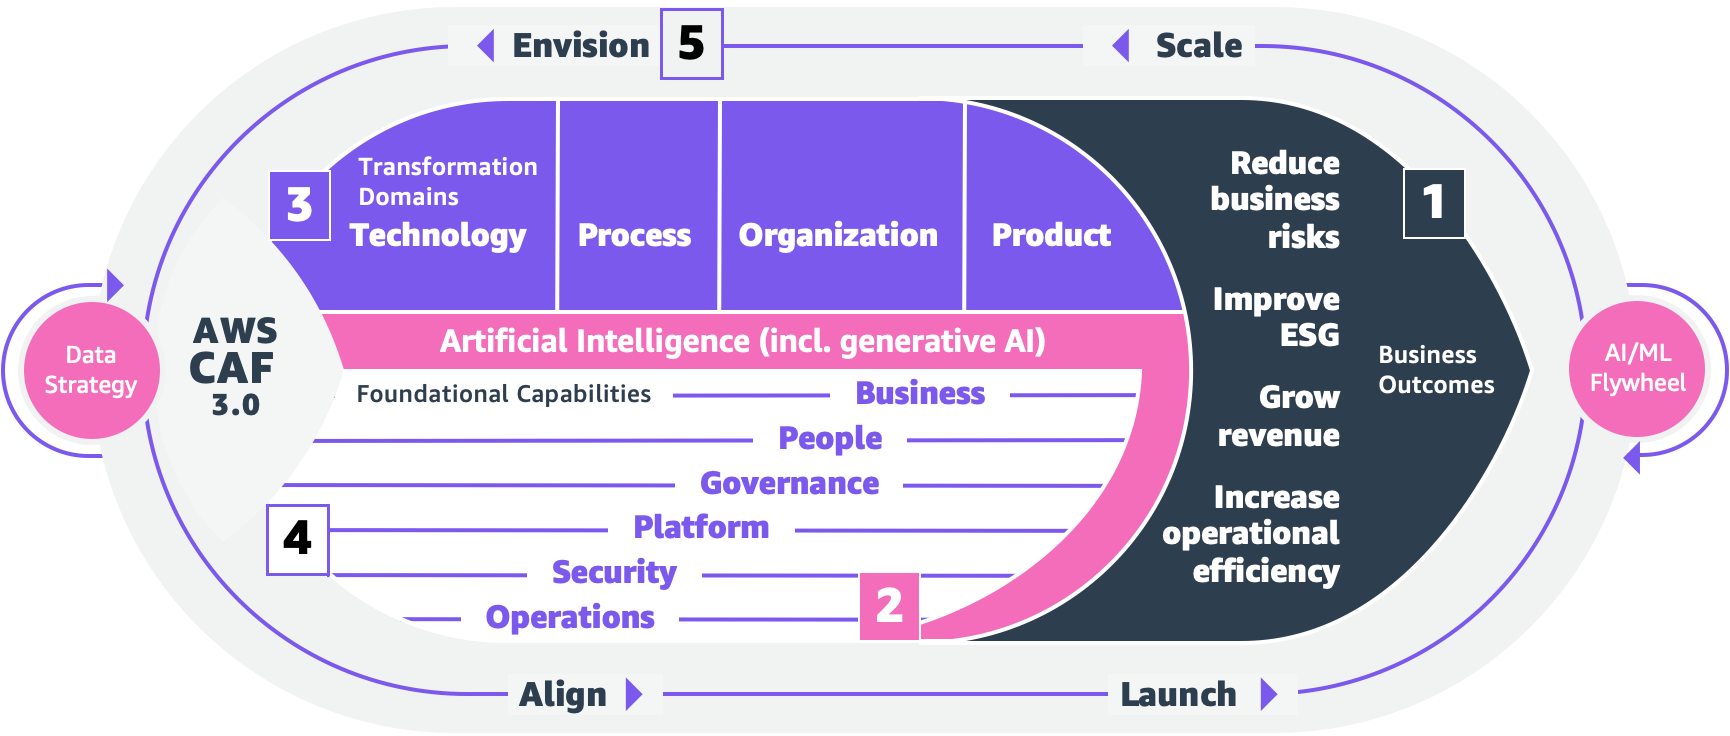 AWS tilbyder ny kunstig intelligens, maskinlæring og generative AI-guider til at planlægge din AI-strategi | Amazon Web Services